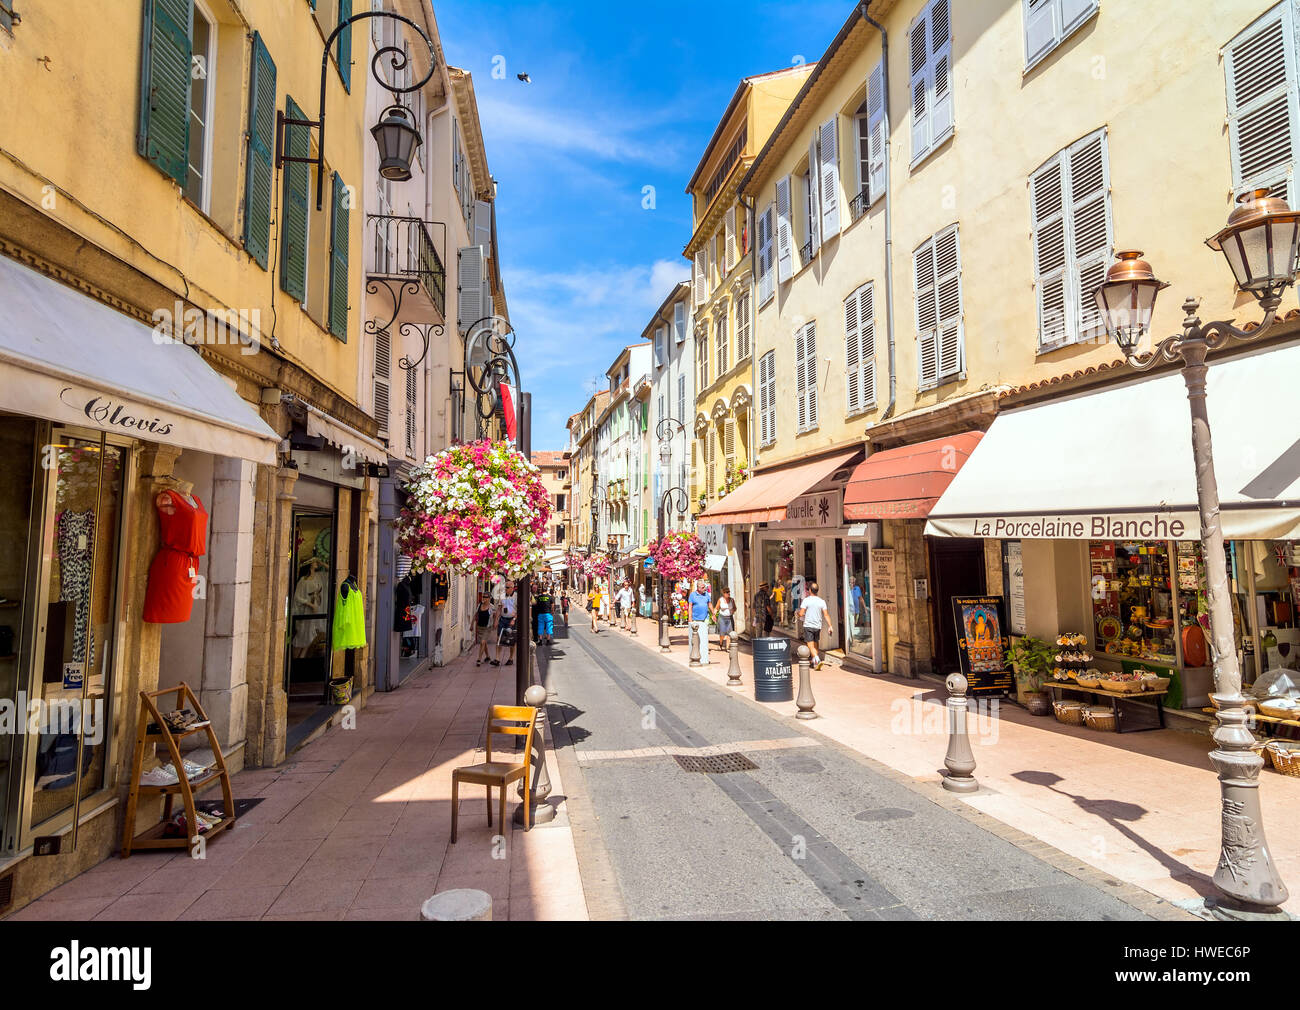 La vue quotidienne de la rue du Dr Rostan street à Antibes, France. Banque D'Images